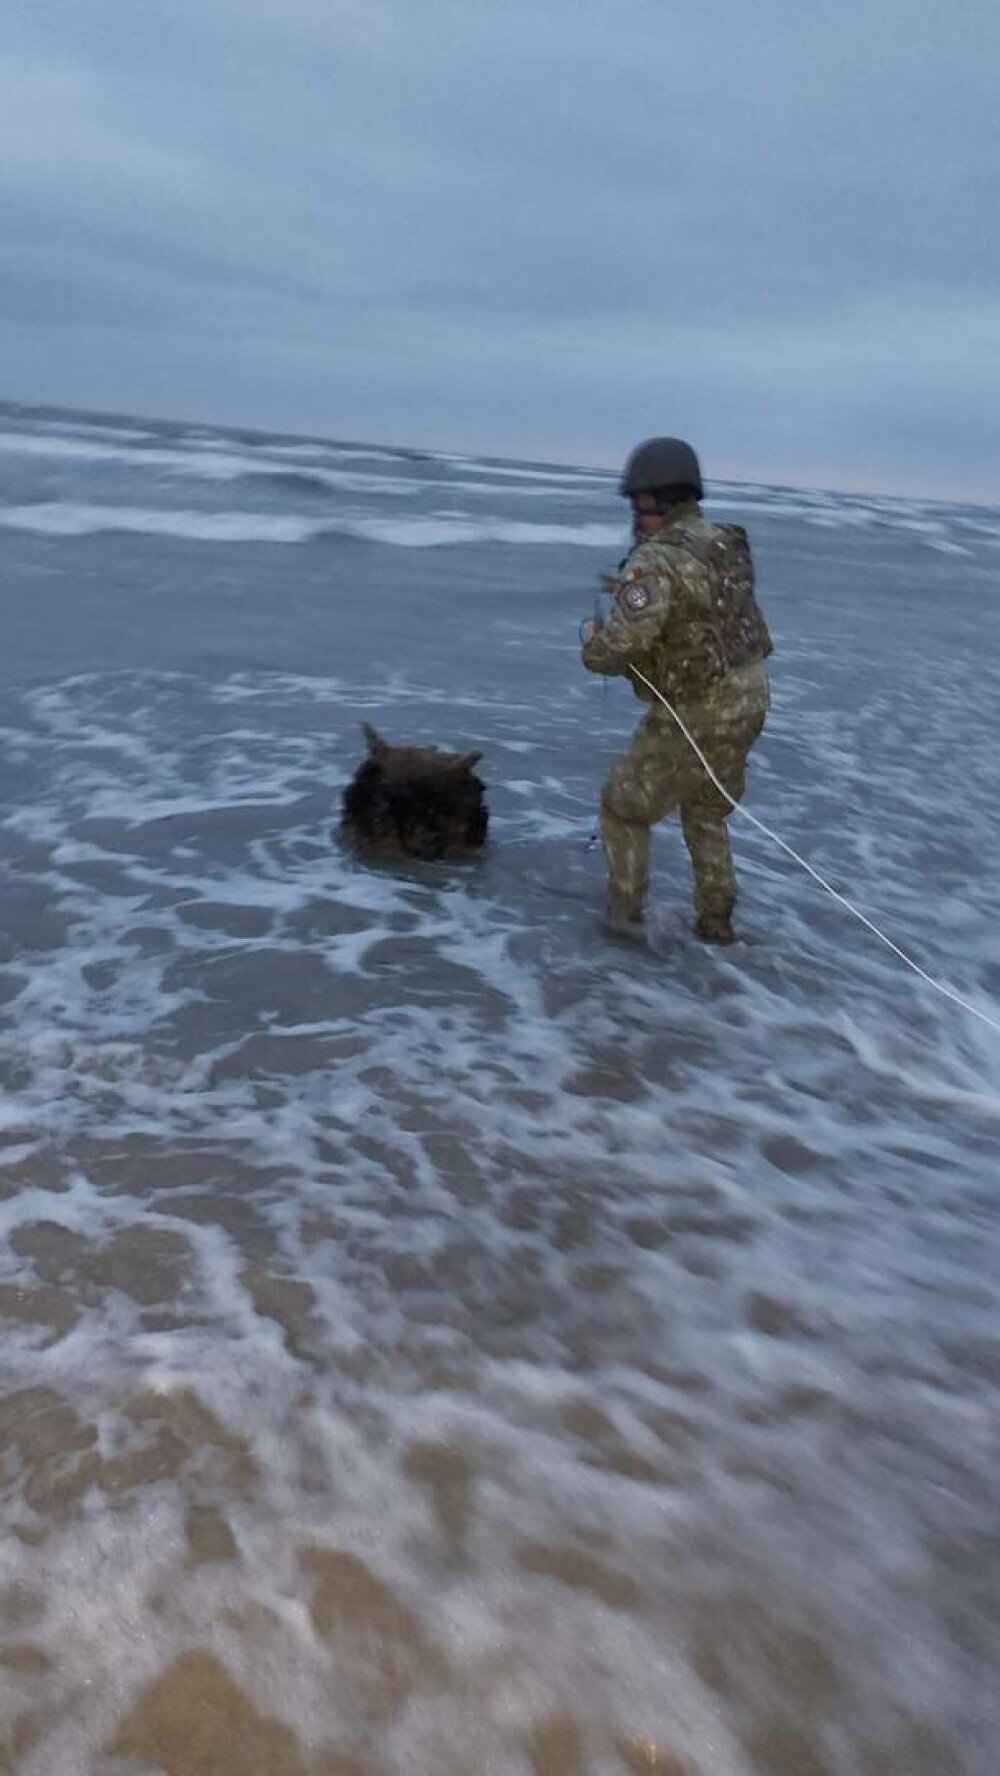 Mina marină descoperită de poliţiştii de frontieră pe plajă, în zona localităţii Sfântu Gheorghe, neutralizată - Imaginea 5